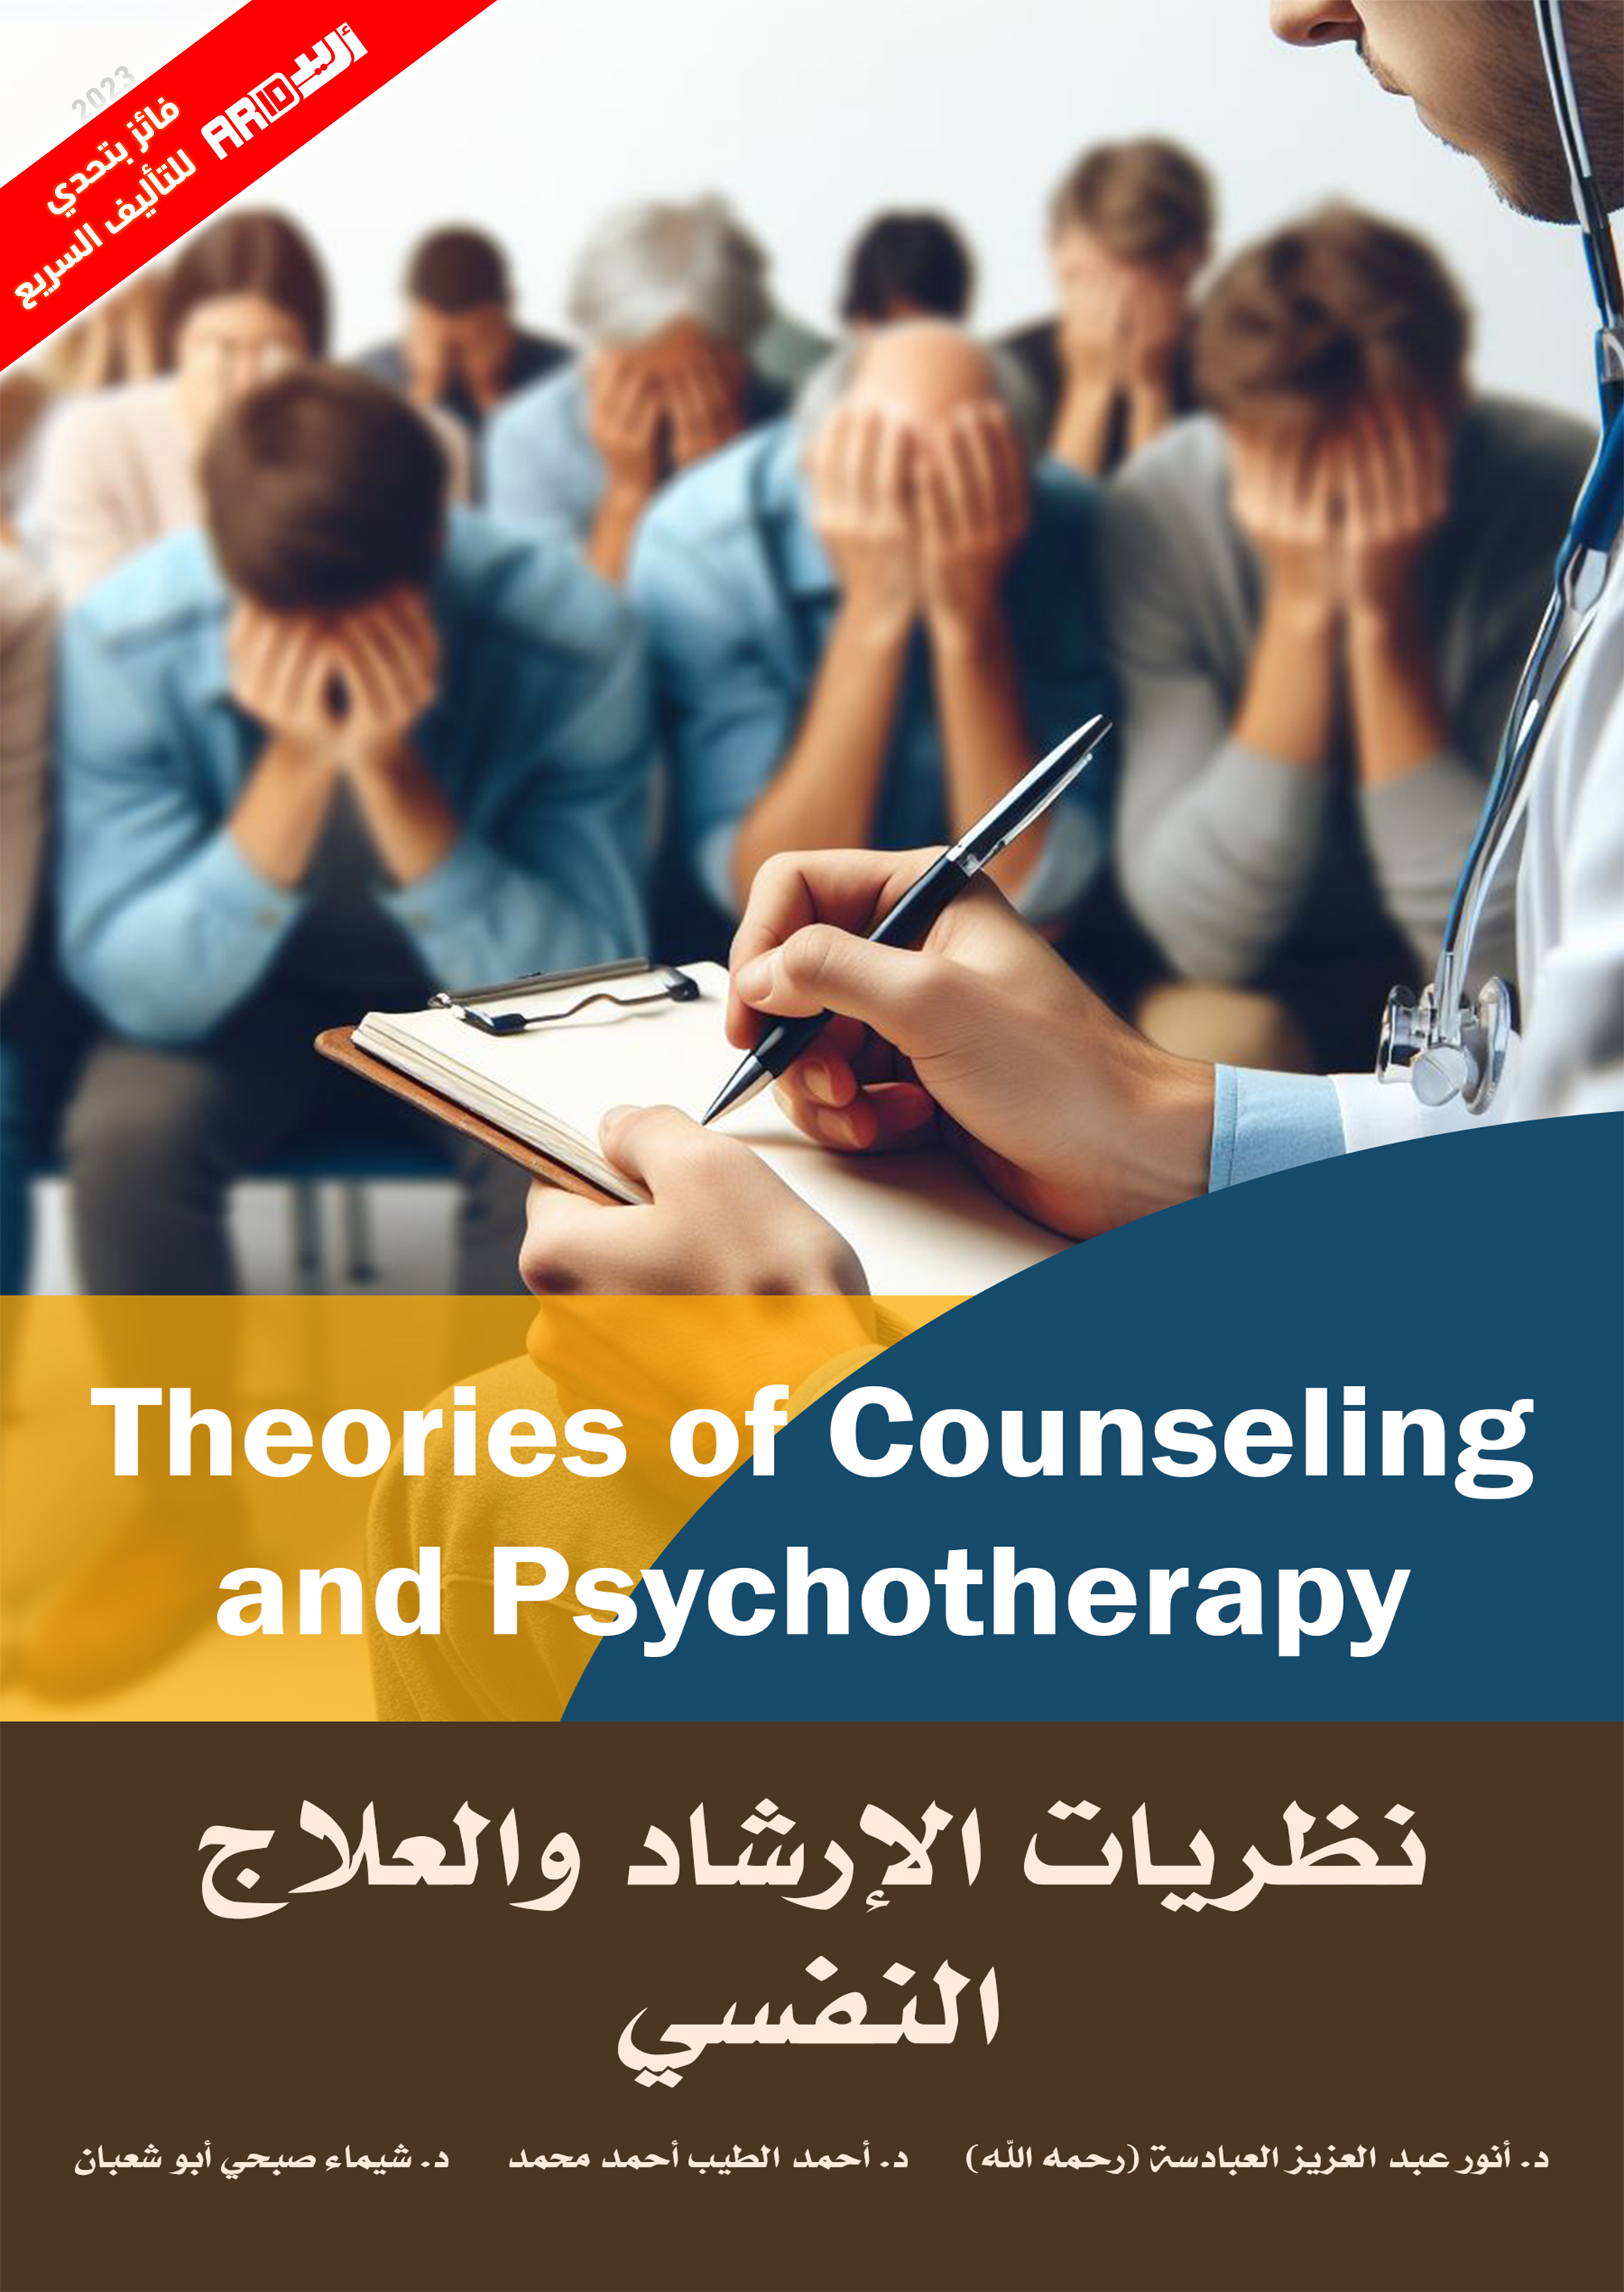 كتاب نظريات الإرشاد والعلاج النفسي